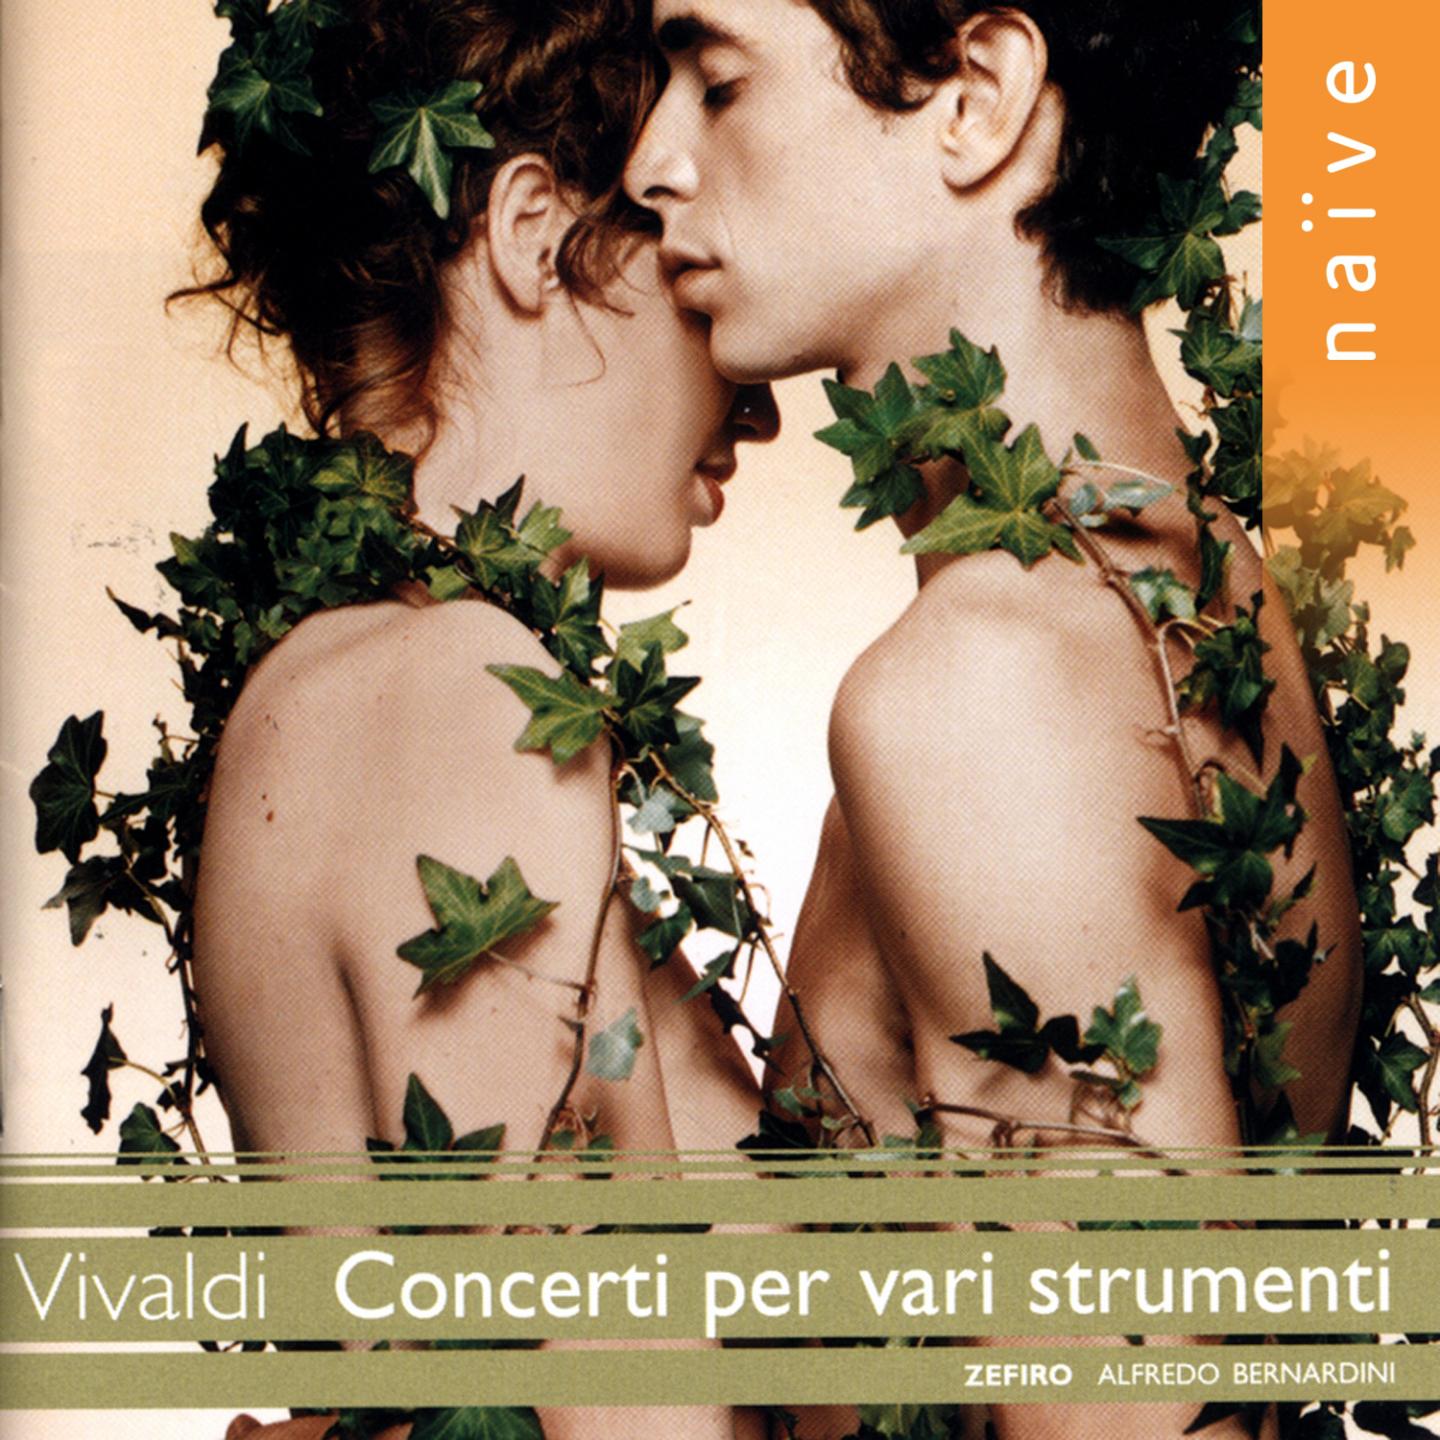 Concerto in C Major, RV 560: I. Larghetto - Allegro